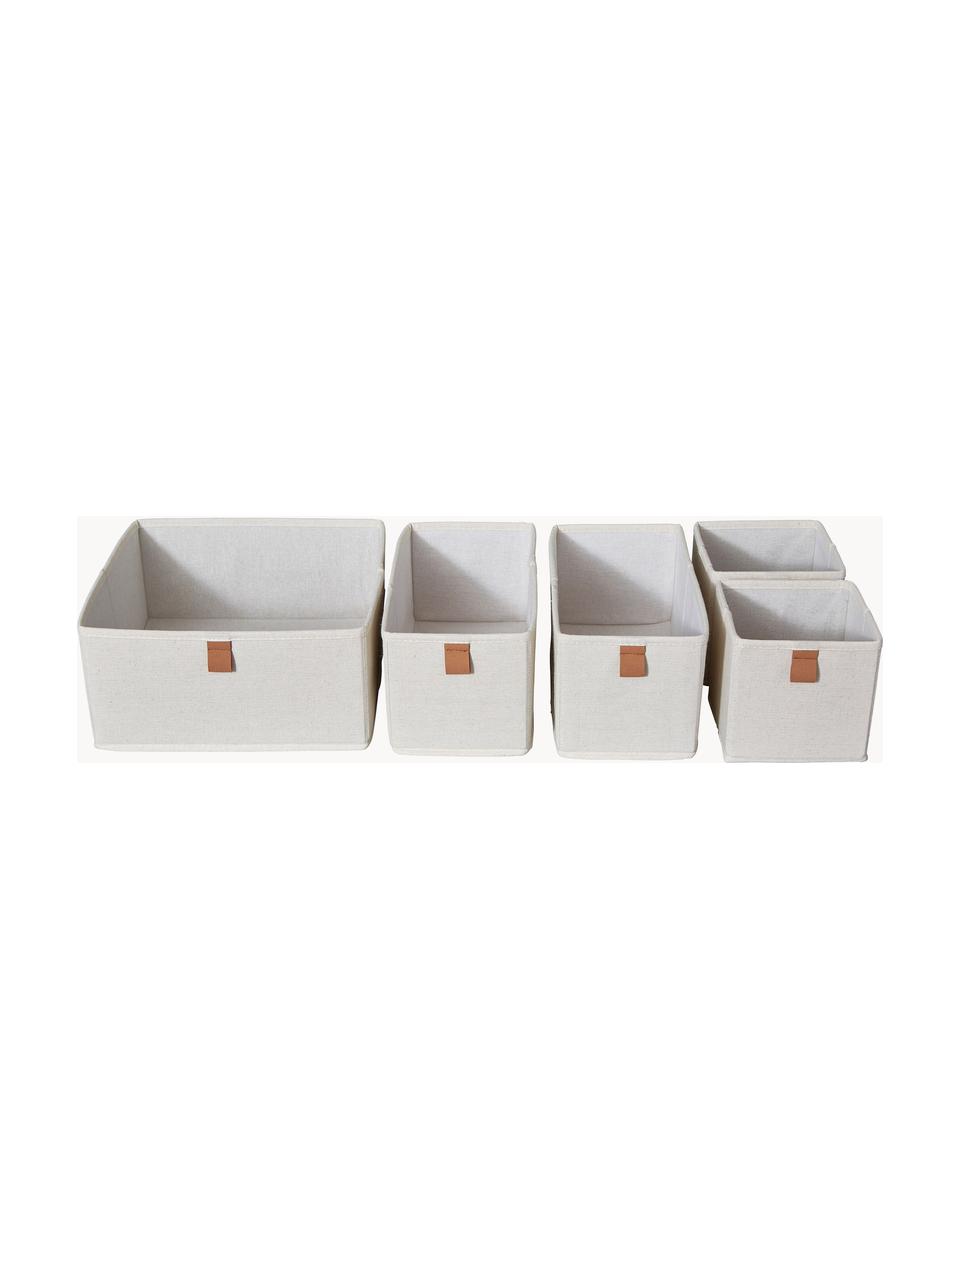 Aufbewahrungsboxen Premium, 5er-Set, Hellbeige, Braun, Set mit verschiedenen Größen